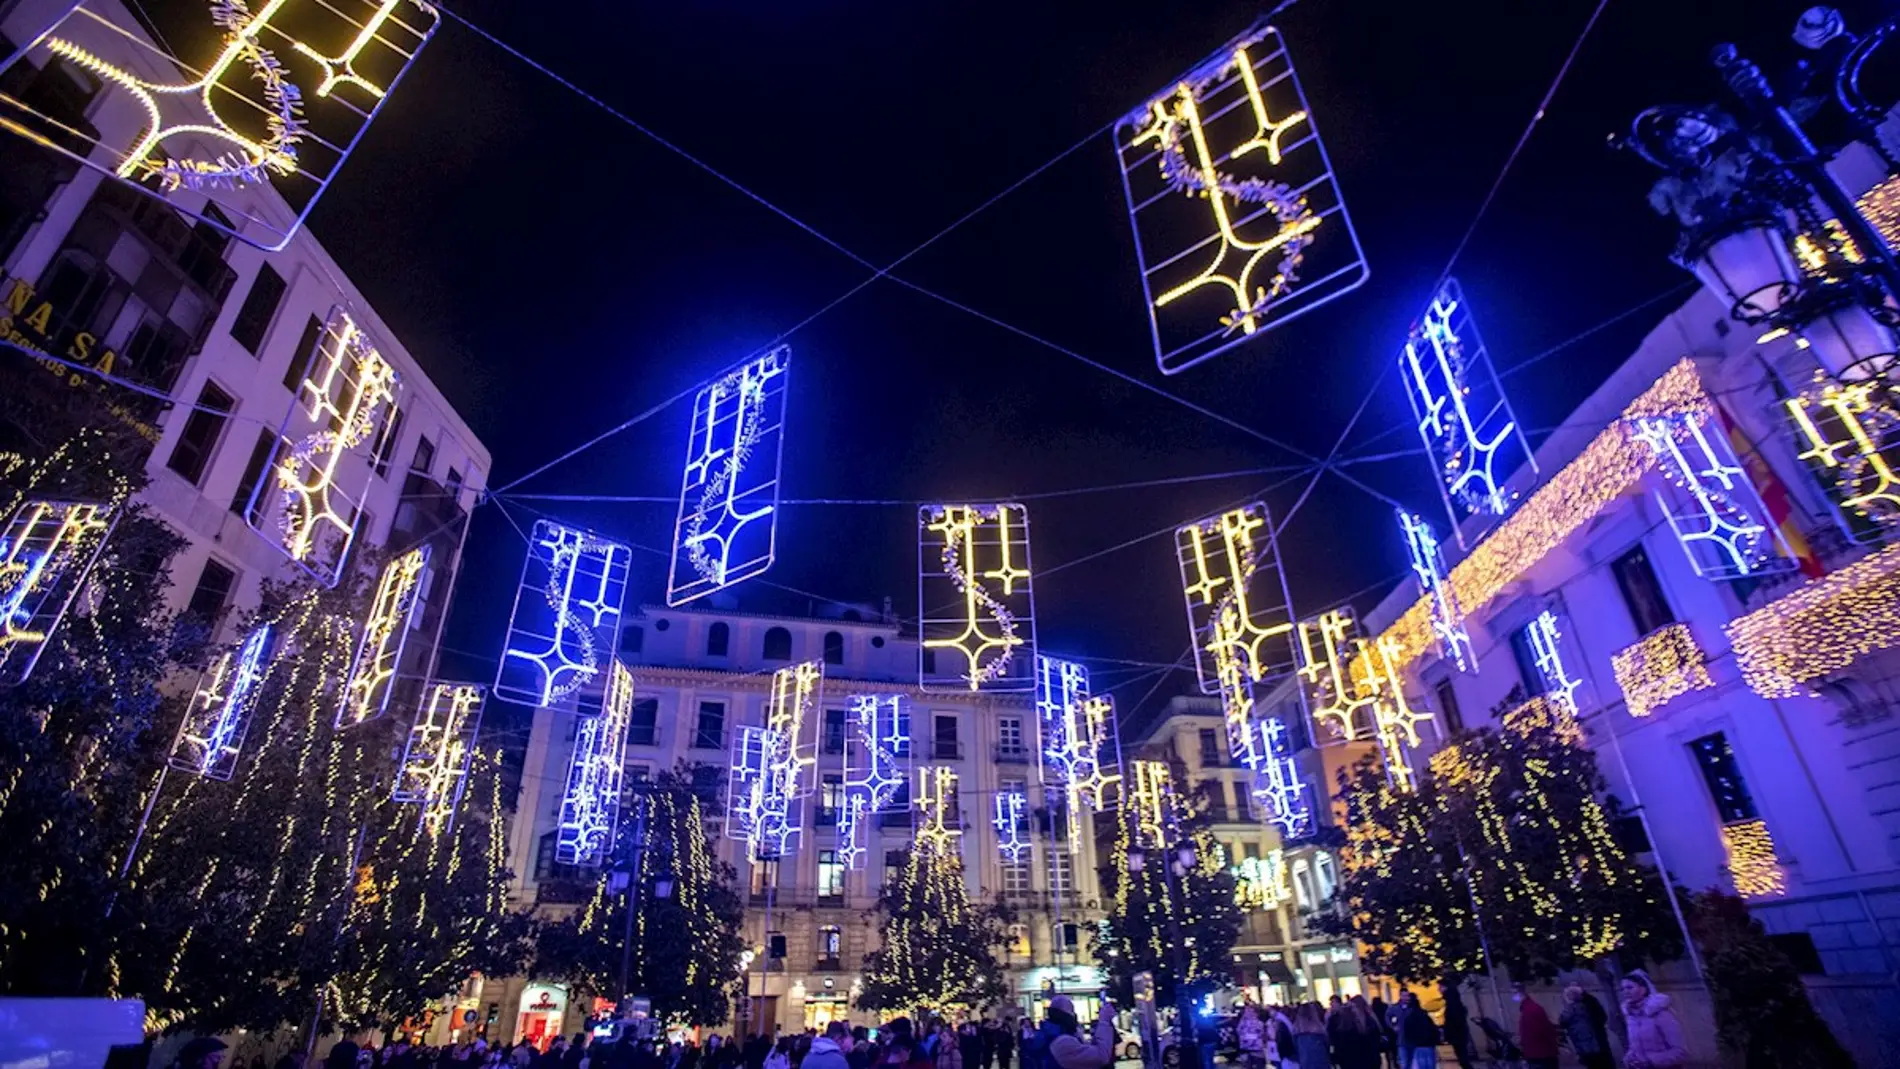 Decenas de personas piden la dimisión del alcalde de Granada por poner luces de Navidad "satánicas"